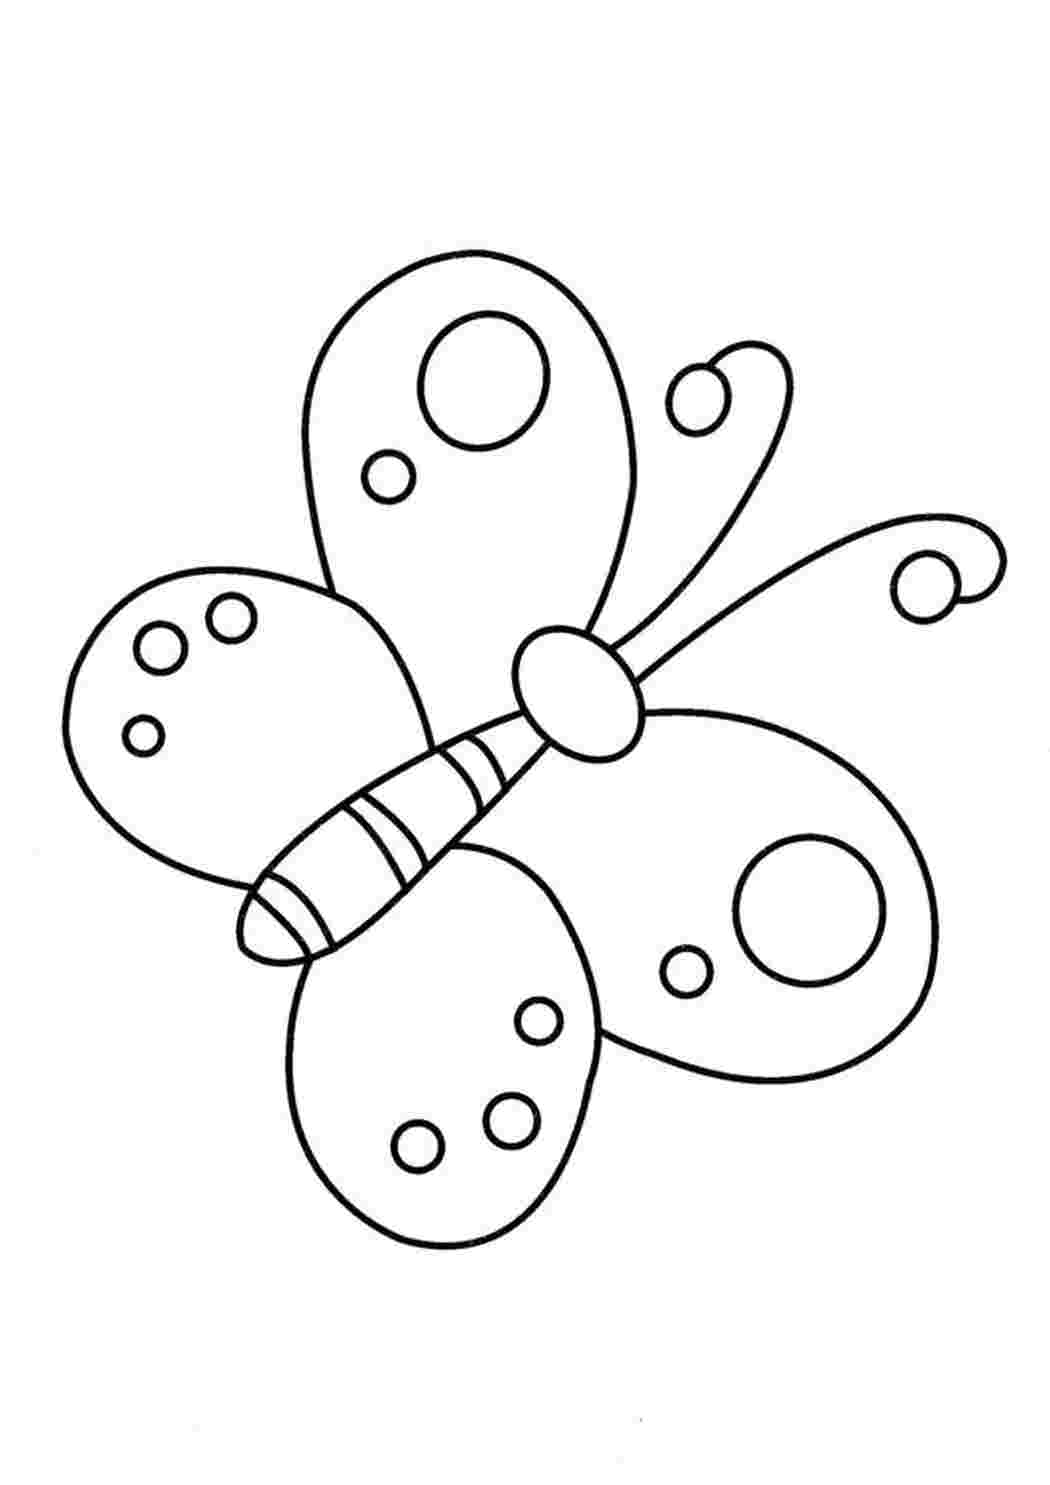 Раскраска Бабочка | Раскраски для детей трех-четырех лет